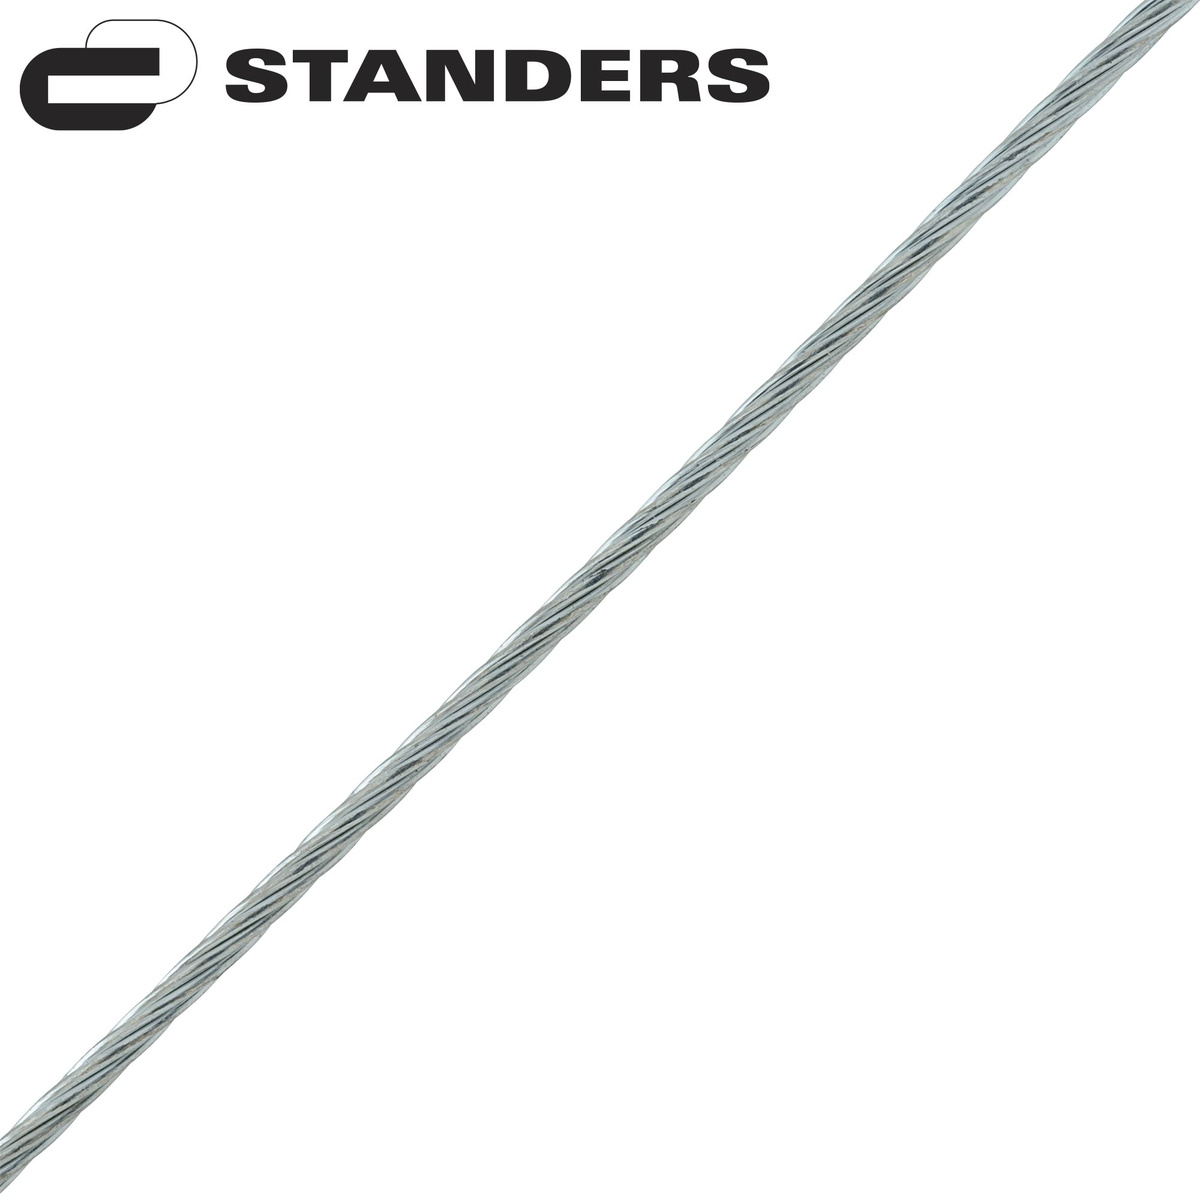 Трос стальной оцинкованный Standers 1 мм 25 м, цвет серебро